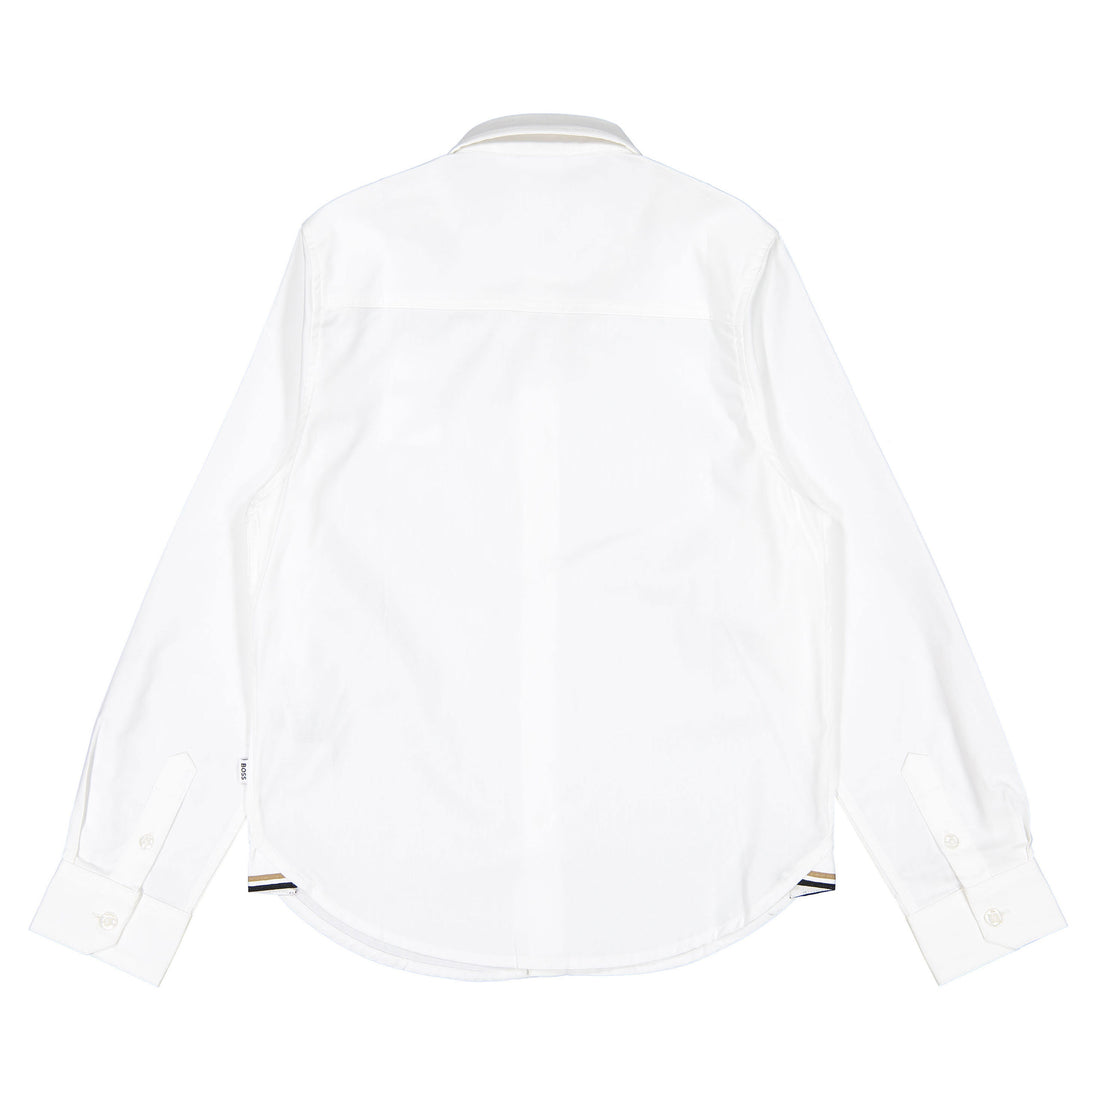 Hugo Boss White Long Sleeved Dress Shirt